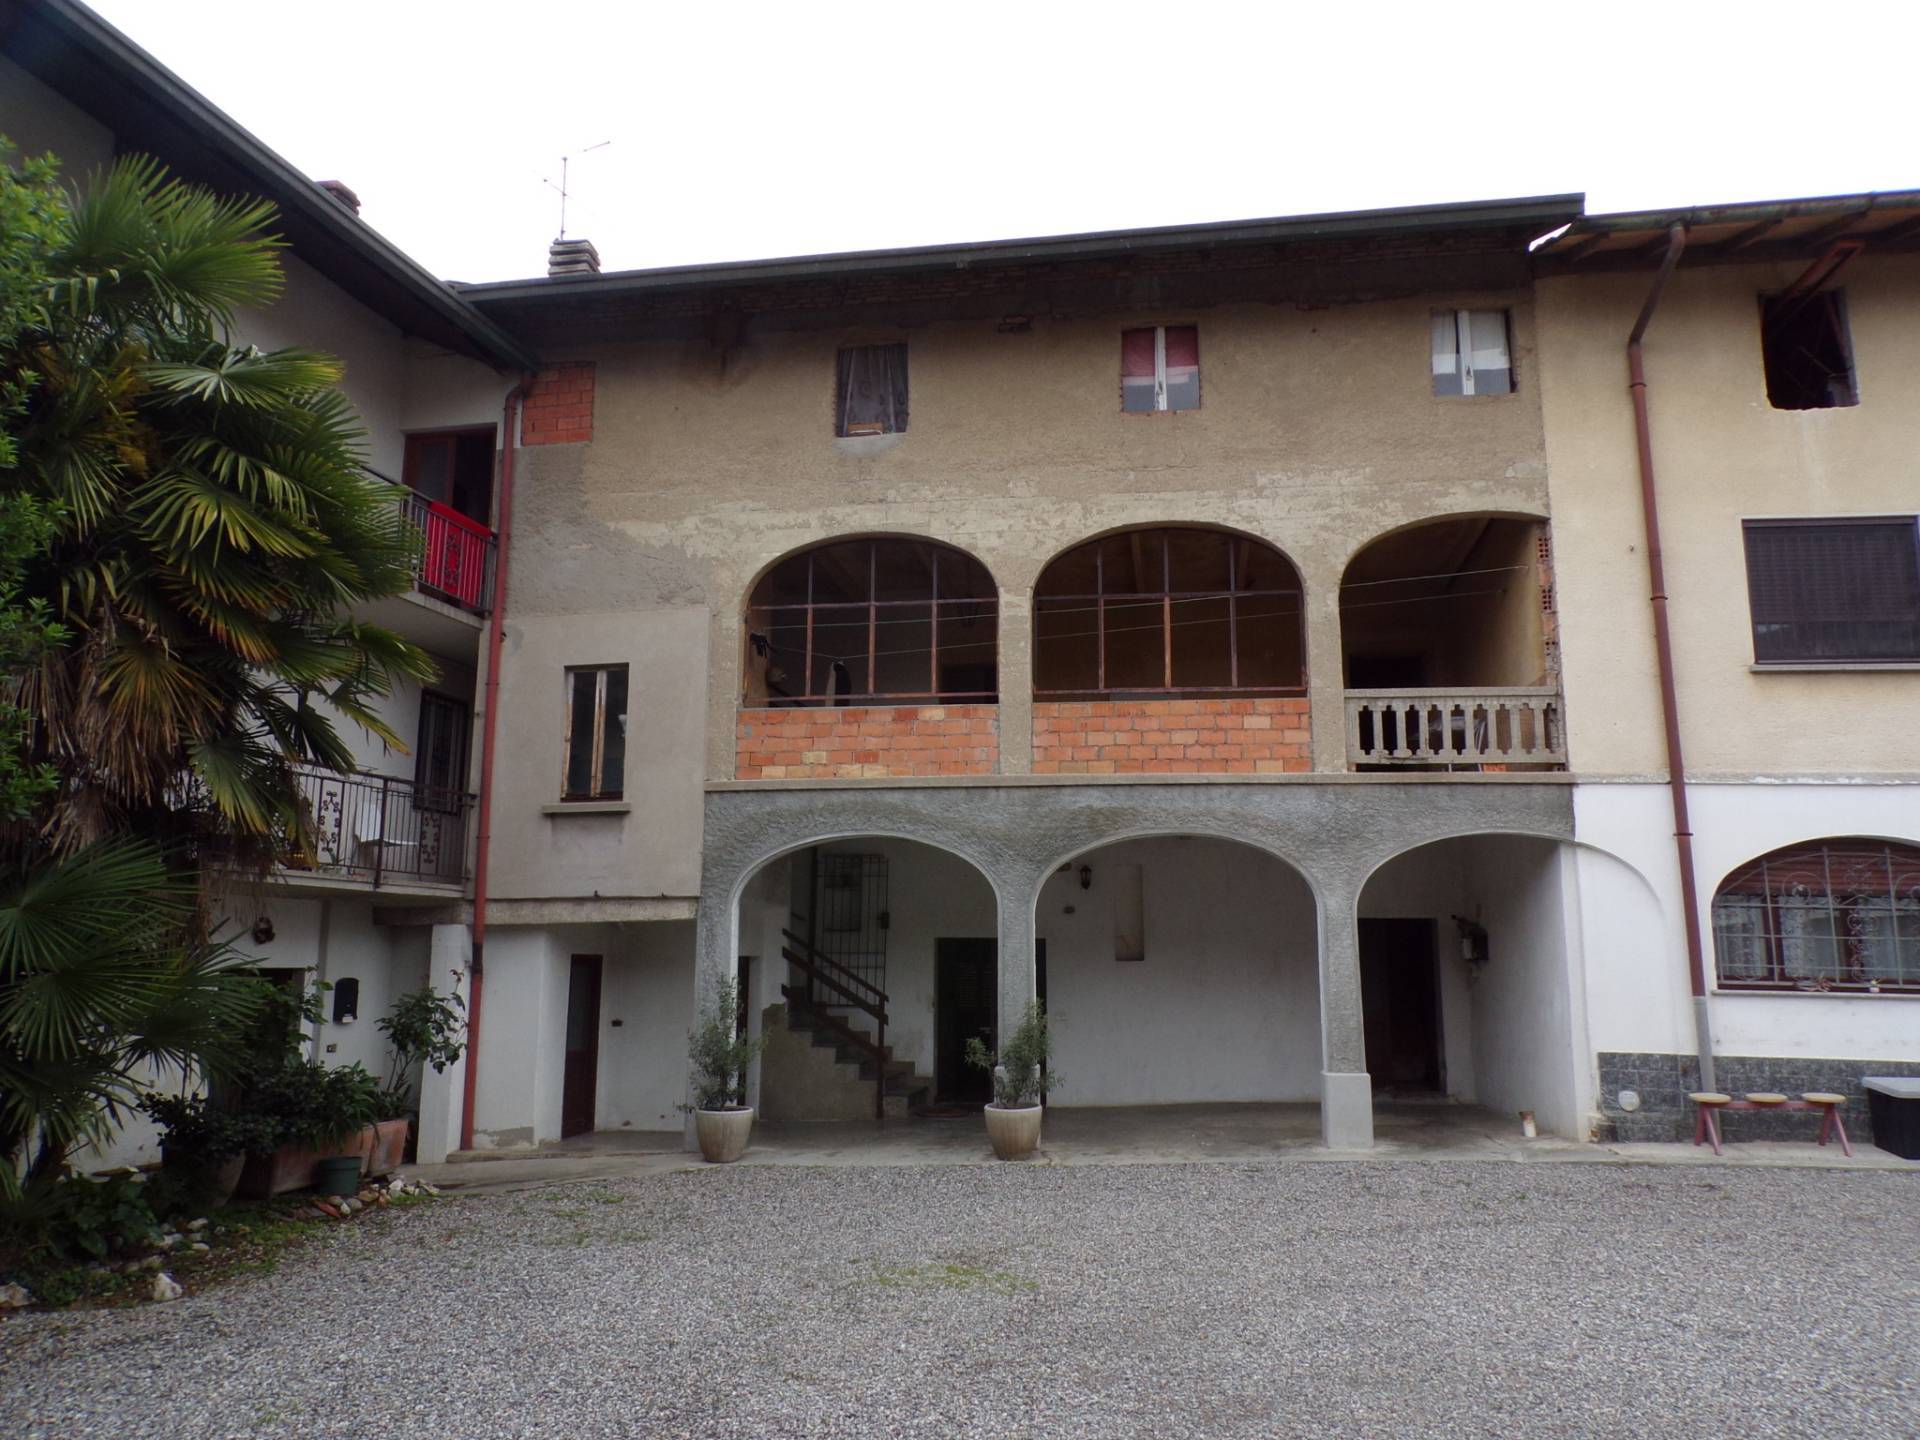 Rustico / Casale in vendita a Valmorea, 3 locali, prezzo € 59.000 | PortaleAgenzieImmobiliari.it